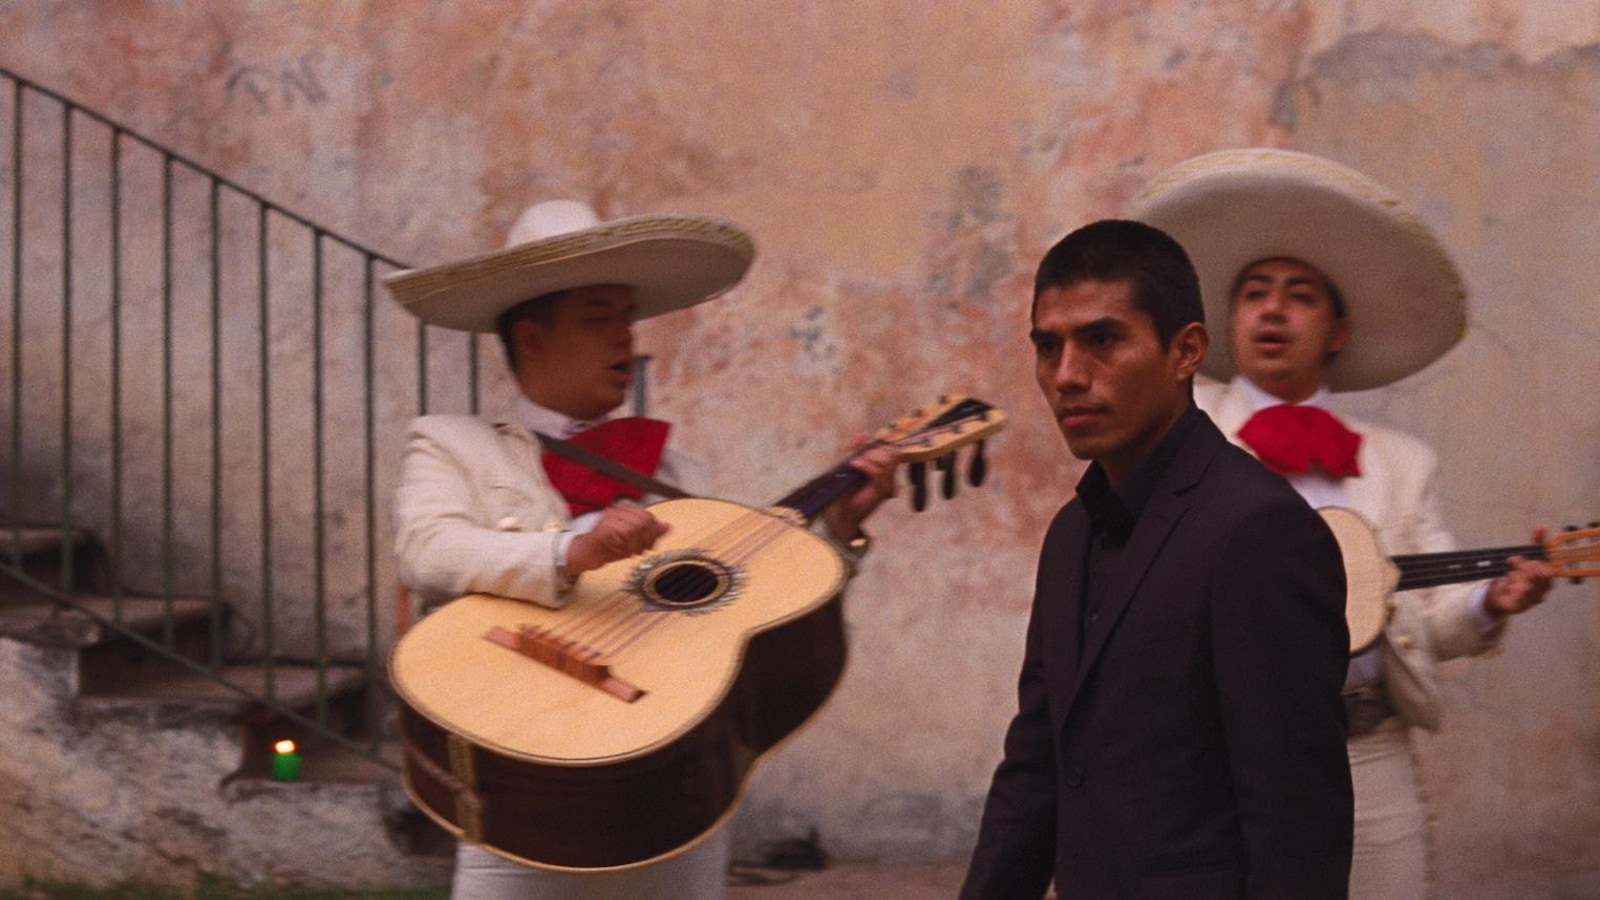 Un jeune homme en costume noir marche devant plusieurs mariachis habillés de blanc.